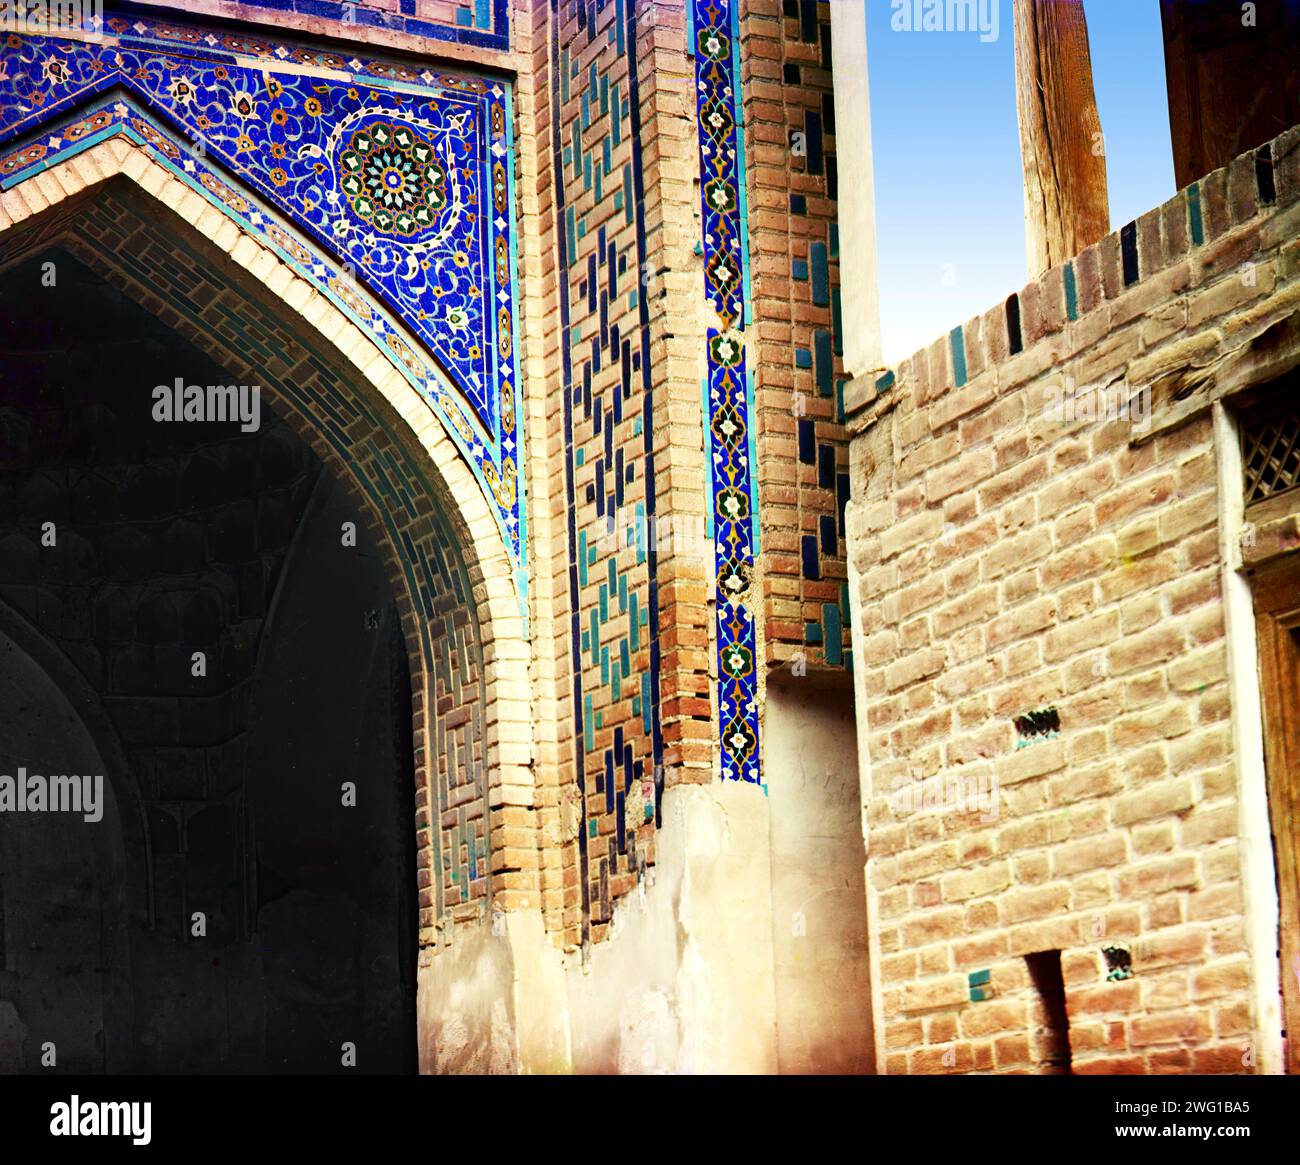 Passage der Toten: Detail über dem Eingang, Samarkand, zwischen 1905 und 1915. Das Shah-i-Zinda Ensemble umfasst Mausoleen und andere rituelle Gebäude aus dem 11. Bis 15. Und 19. Jahrhundert. Stockfoto